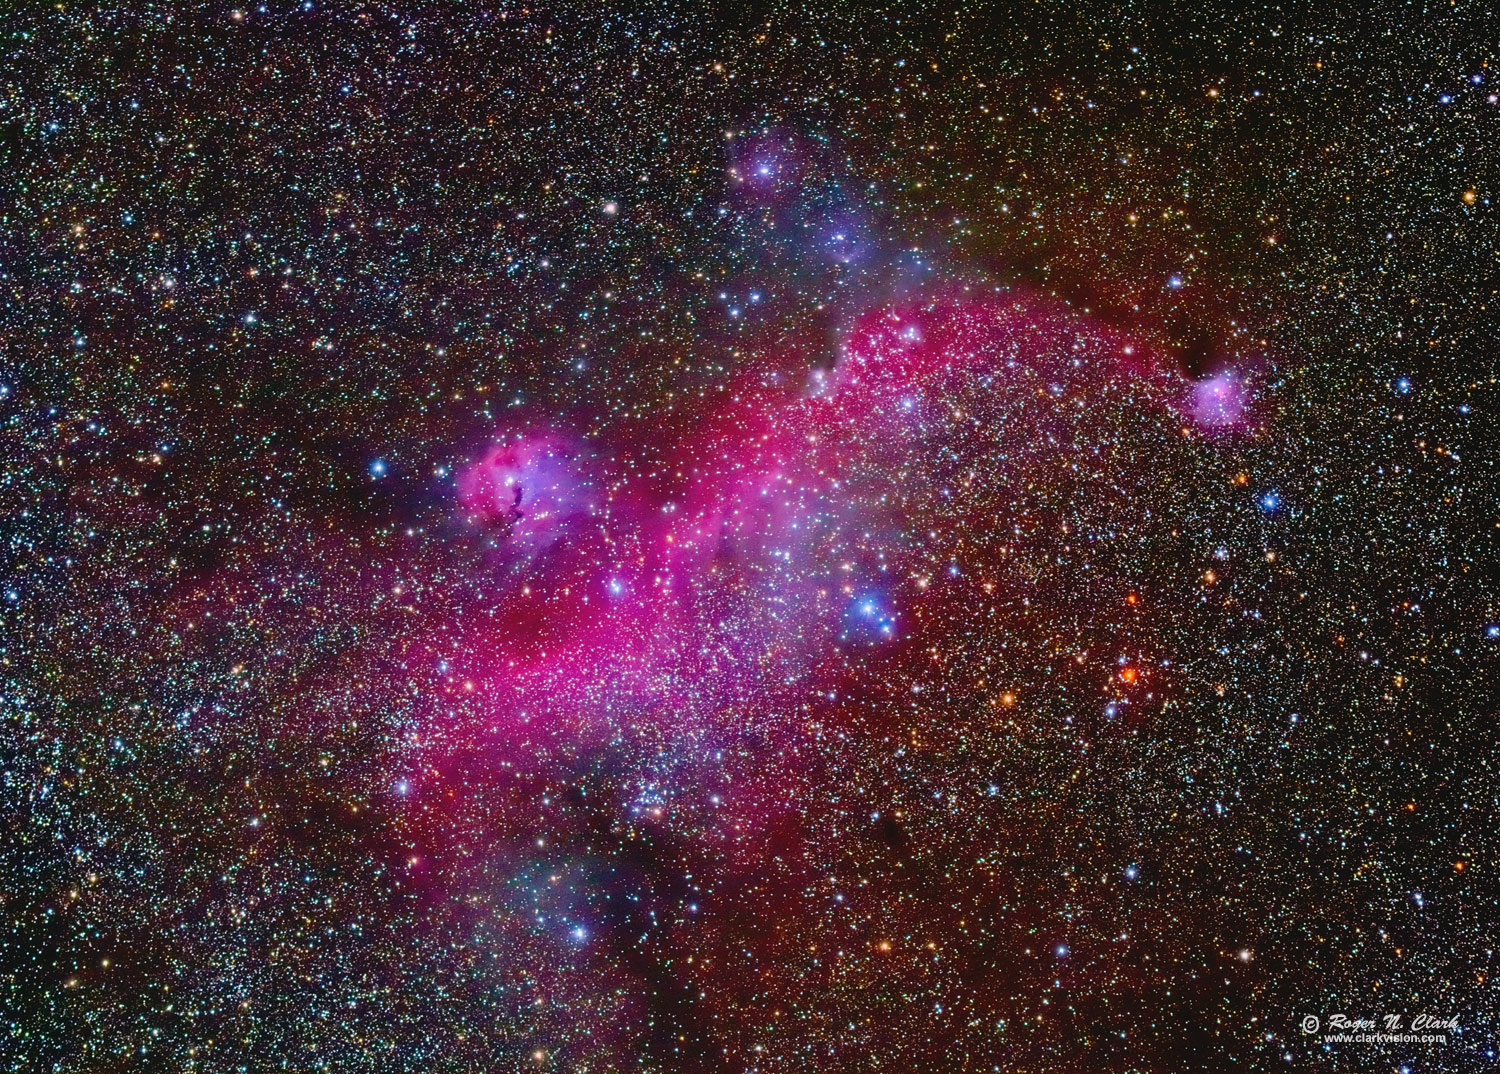 image seagull-nebula-rnclark-c02-03-2019-0j6a3444-575-av124-f-1500s.jpg is Copyrighted by Roger N. Clark, www.clarkvision.com